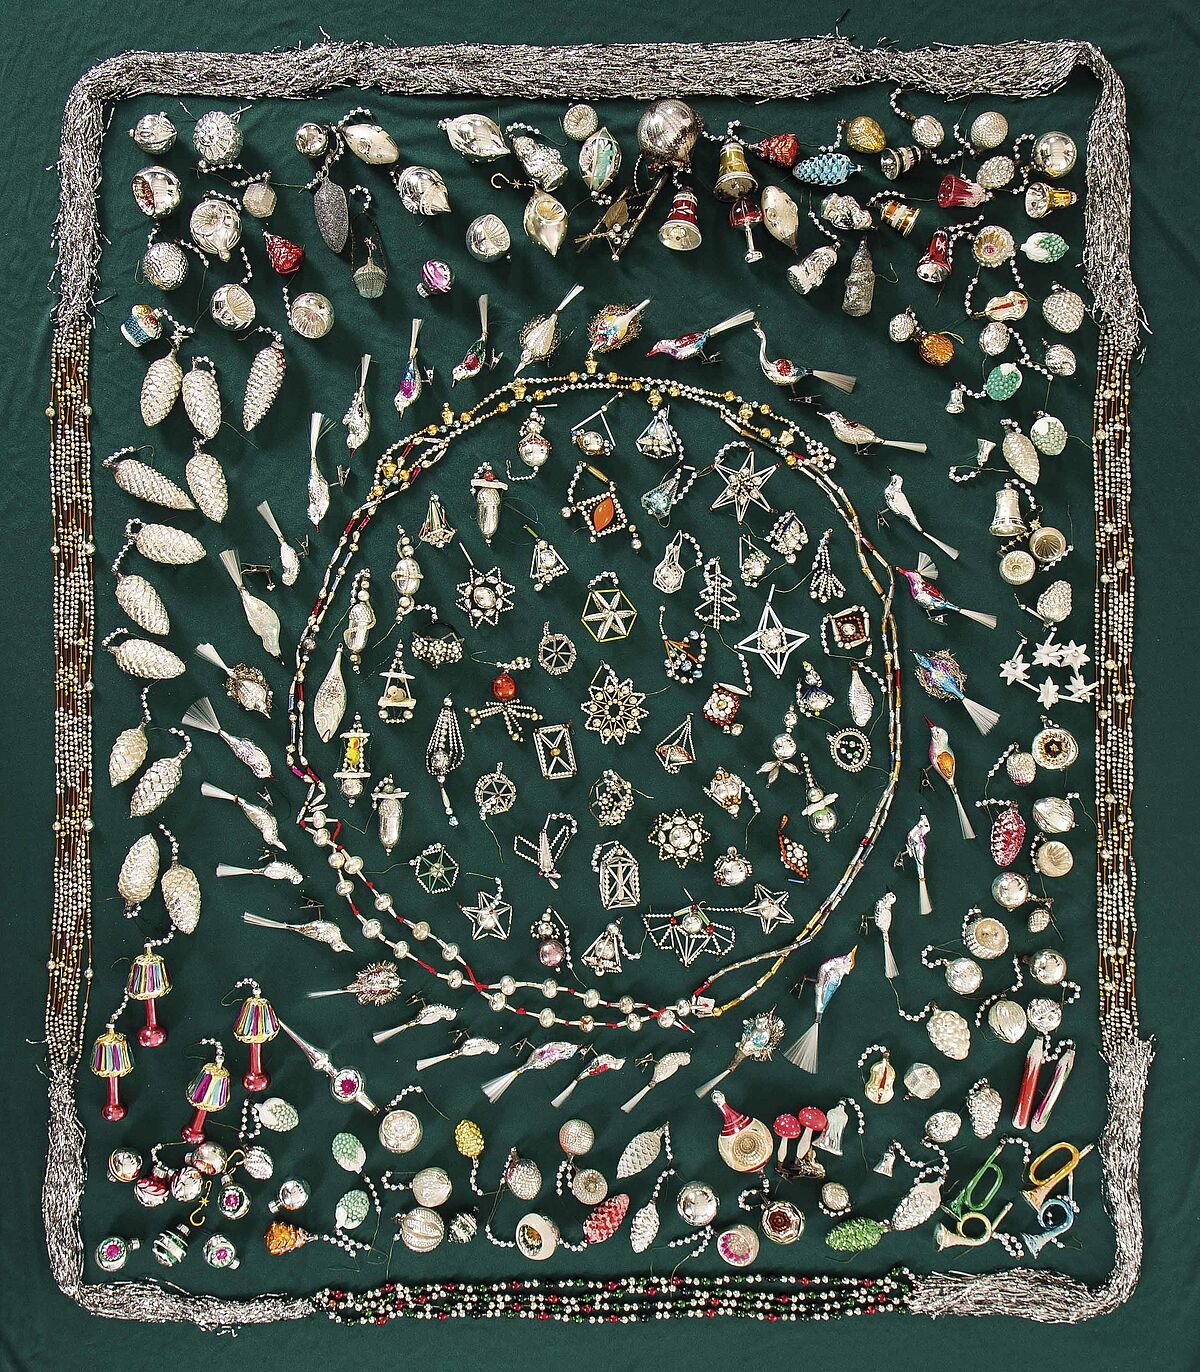 Gablonzer Weihnachtsschmuck handgefertigt aus Perlen ca 1950 Lampenschirm x147 